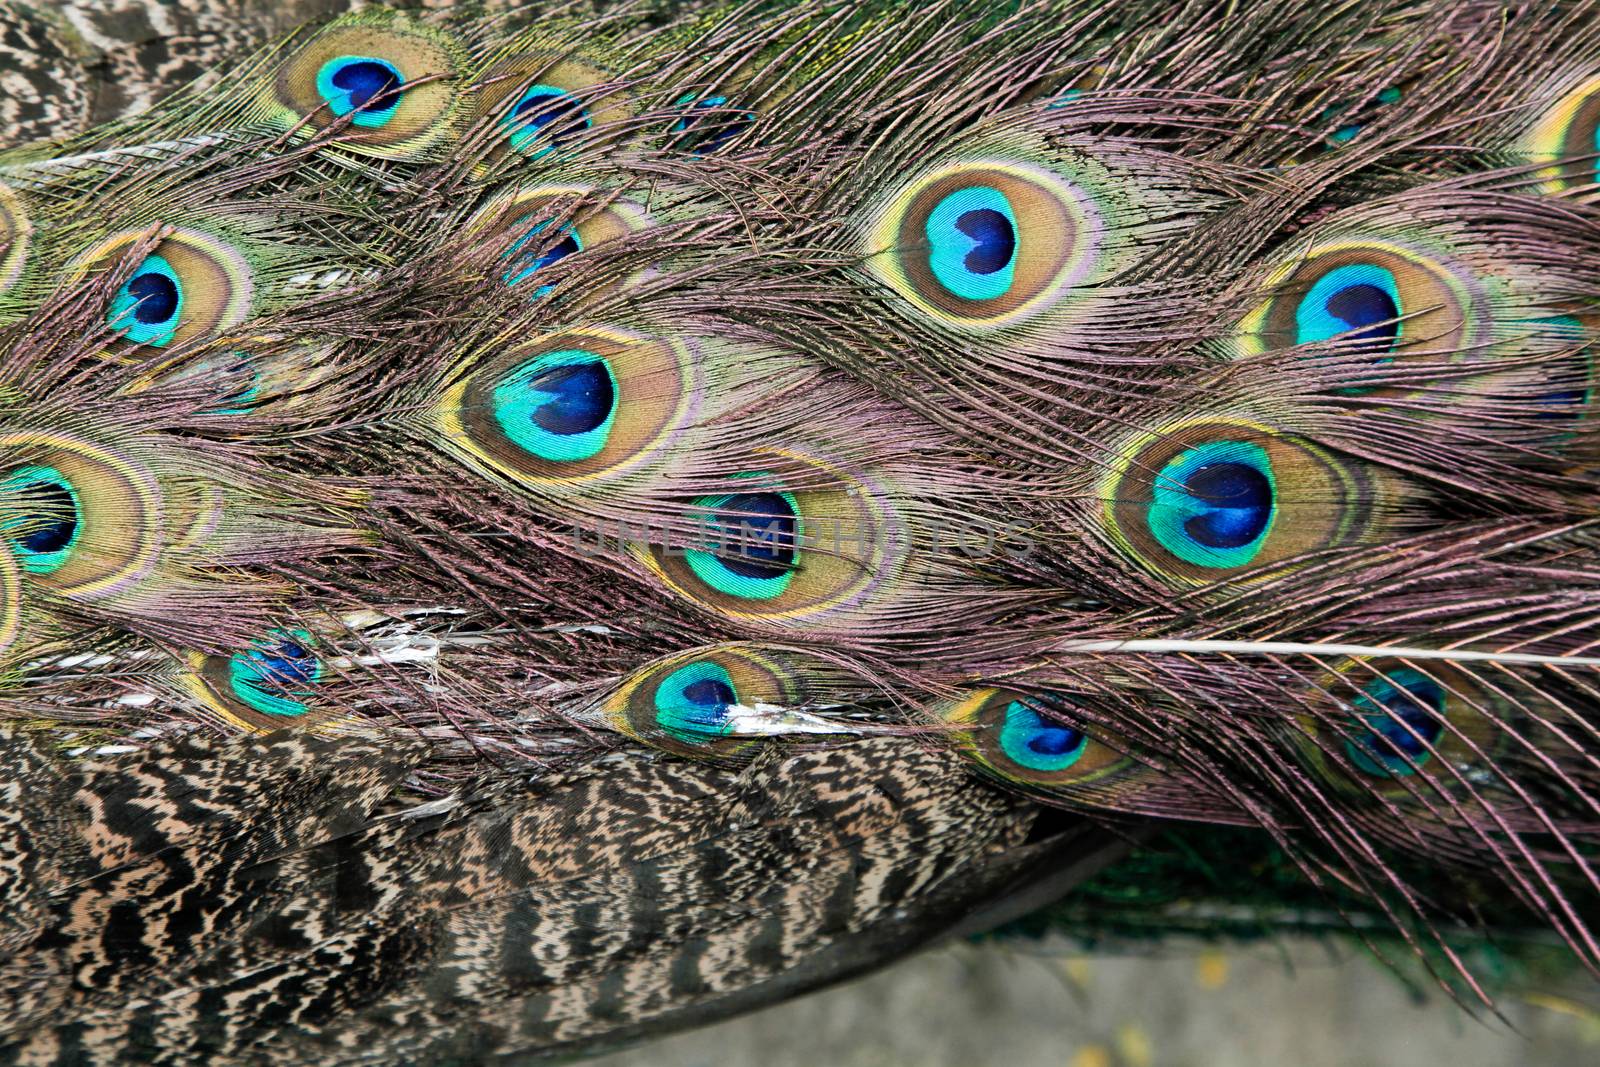 Beautiful Peacock glorifying its feathers